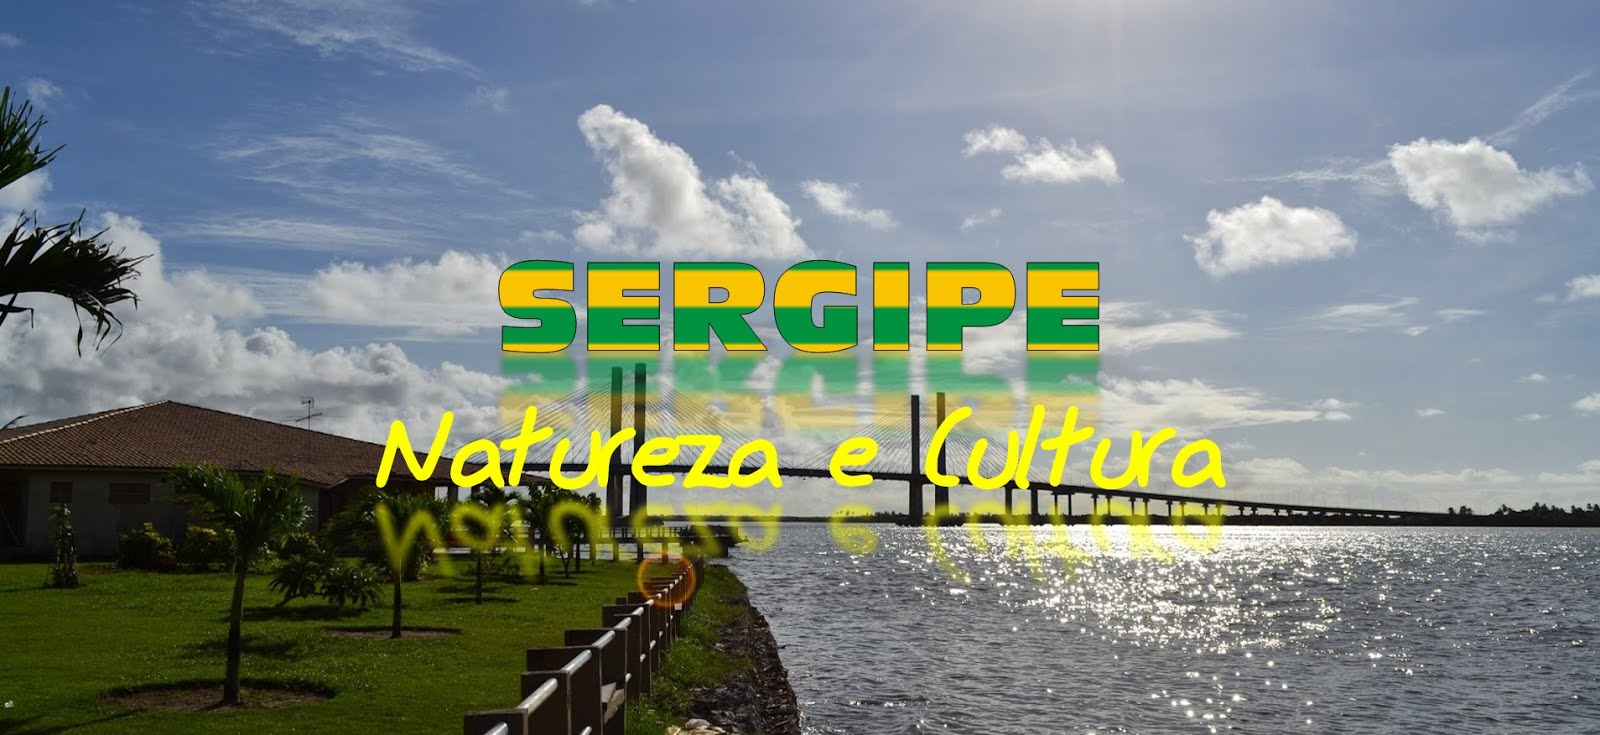 Sergipe - Natureza e Cultura